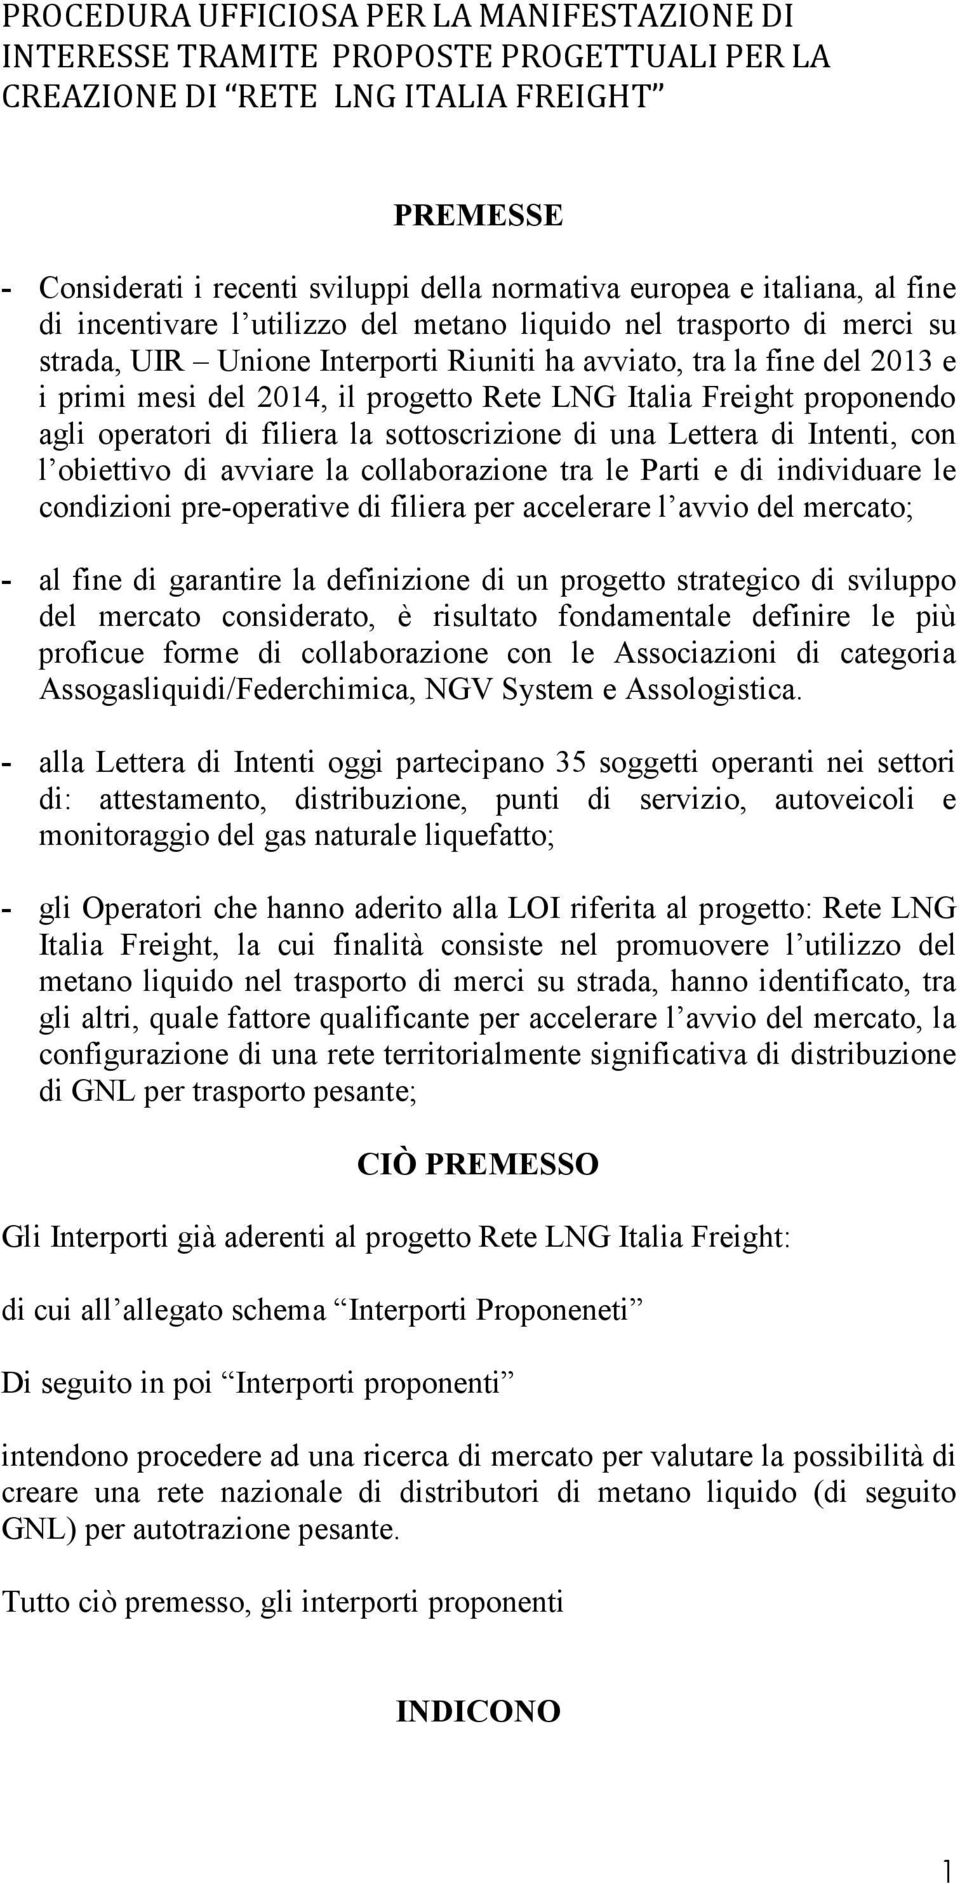 Rete LNG Italia Freight proponendo agli operatori di filiera la sottoscrizione di una Lettera di Intenti, con l obiettivo di avviare la collaborazione tra le Parti e di individuare le condizioni